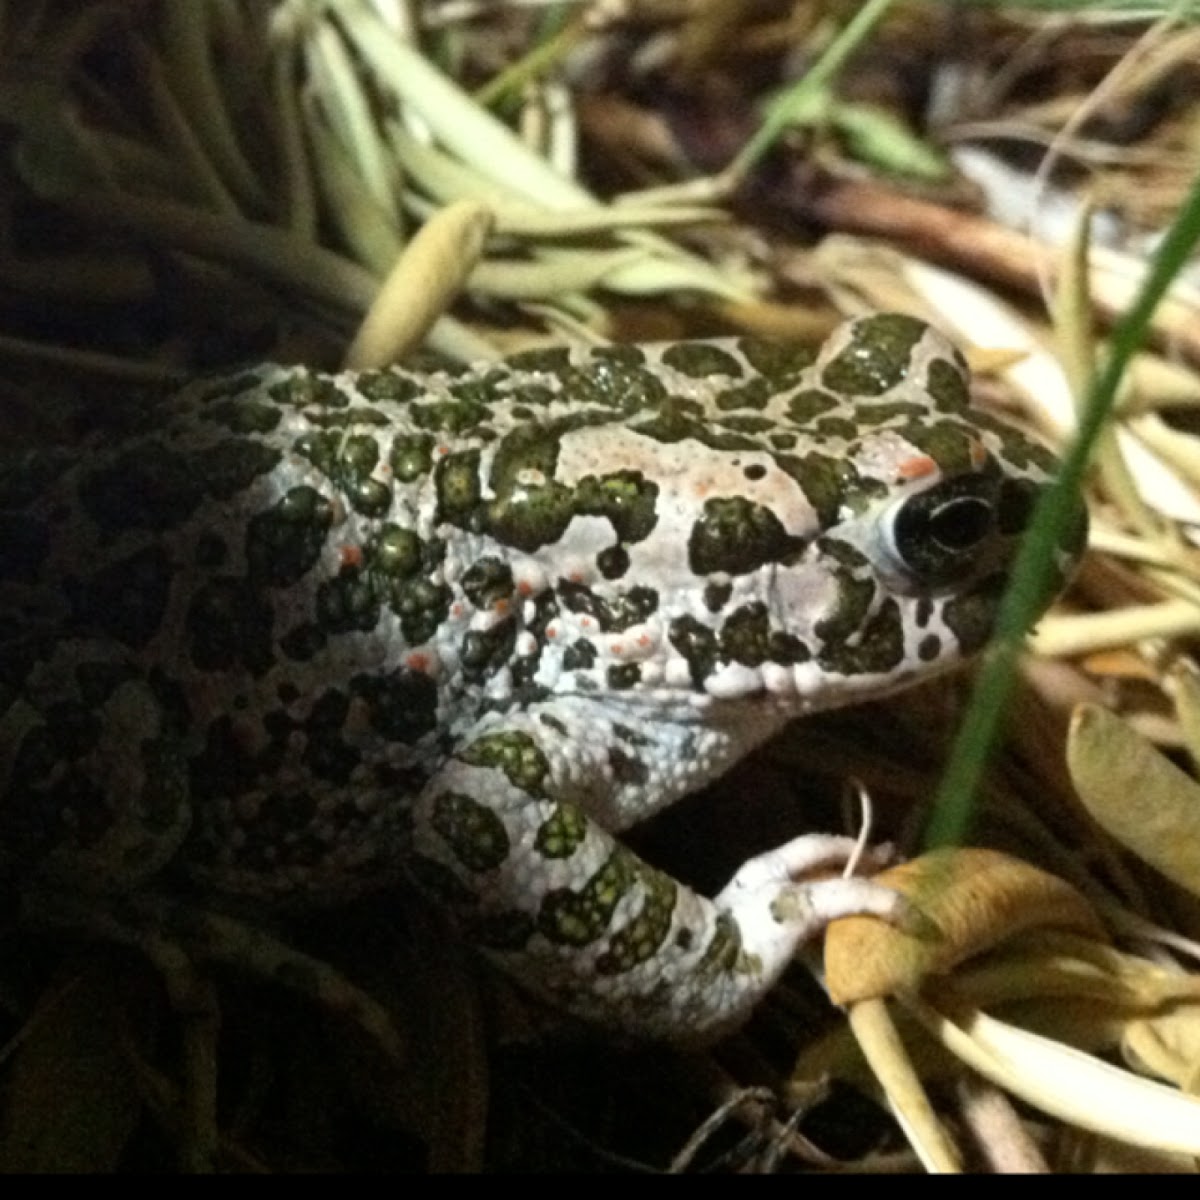 Green toads (rospo smeraldino)